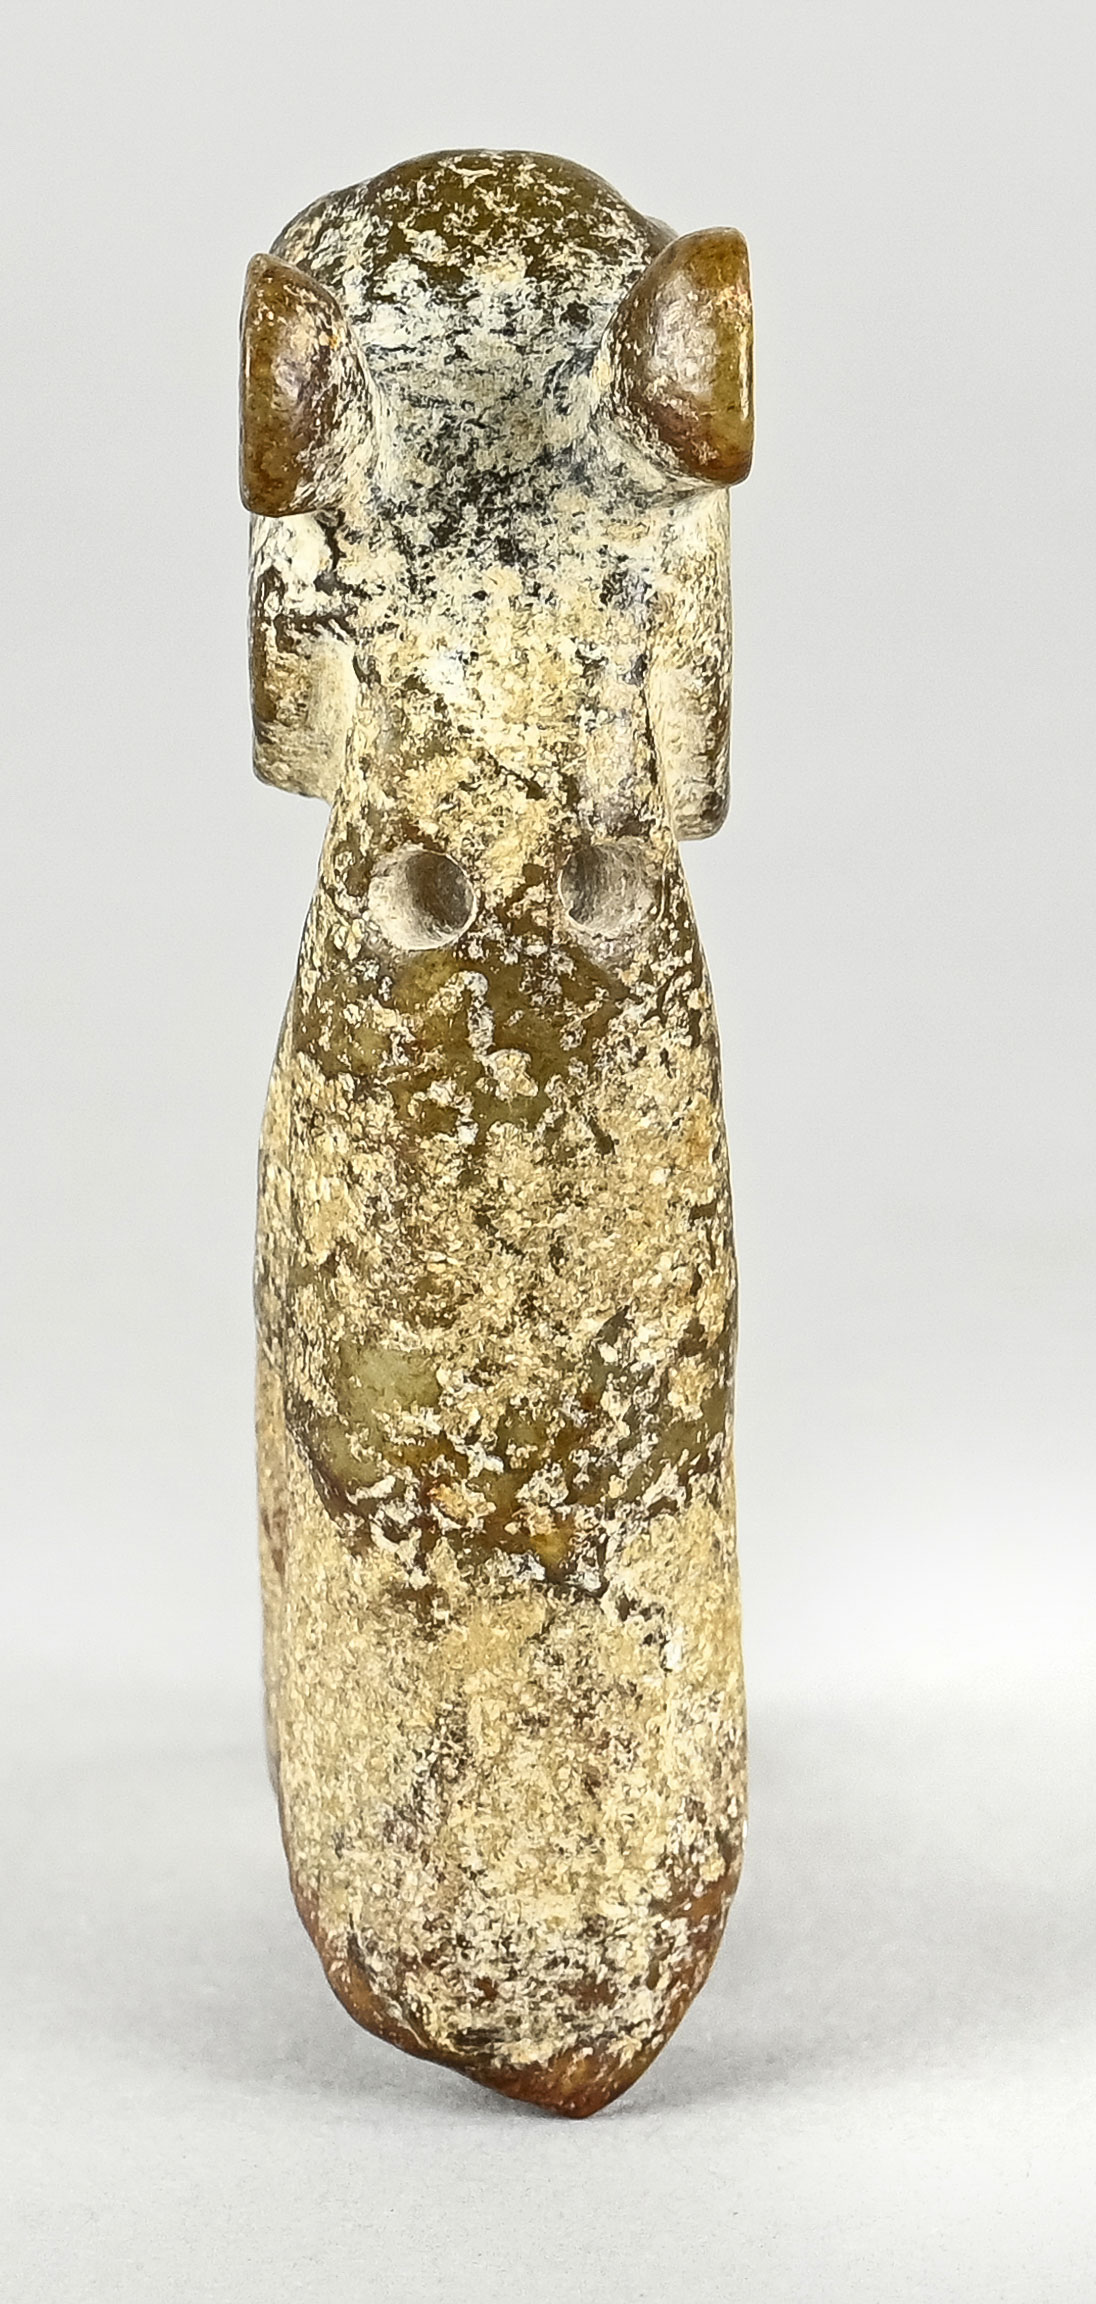 Hongshang Amulett, Fantasiefigur, Tier ähnlich, Jade mit Patina, China, Höhe 9 cm - Bild 3 aus 4